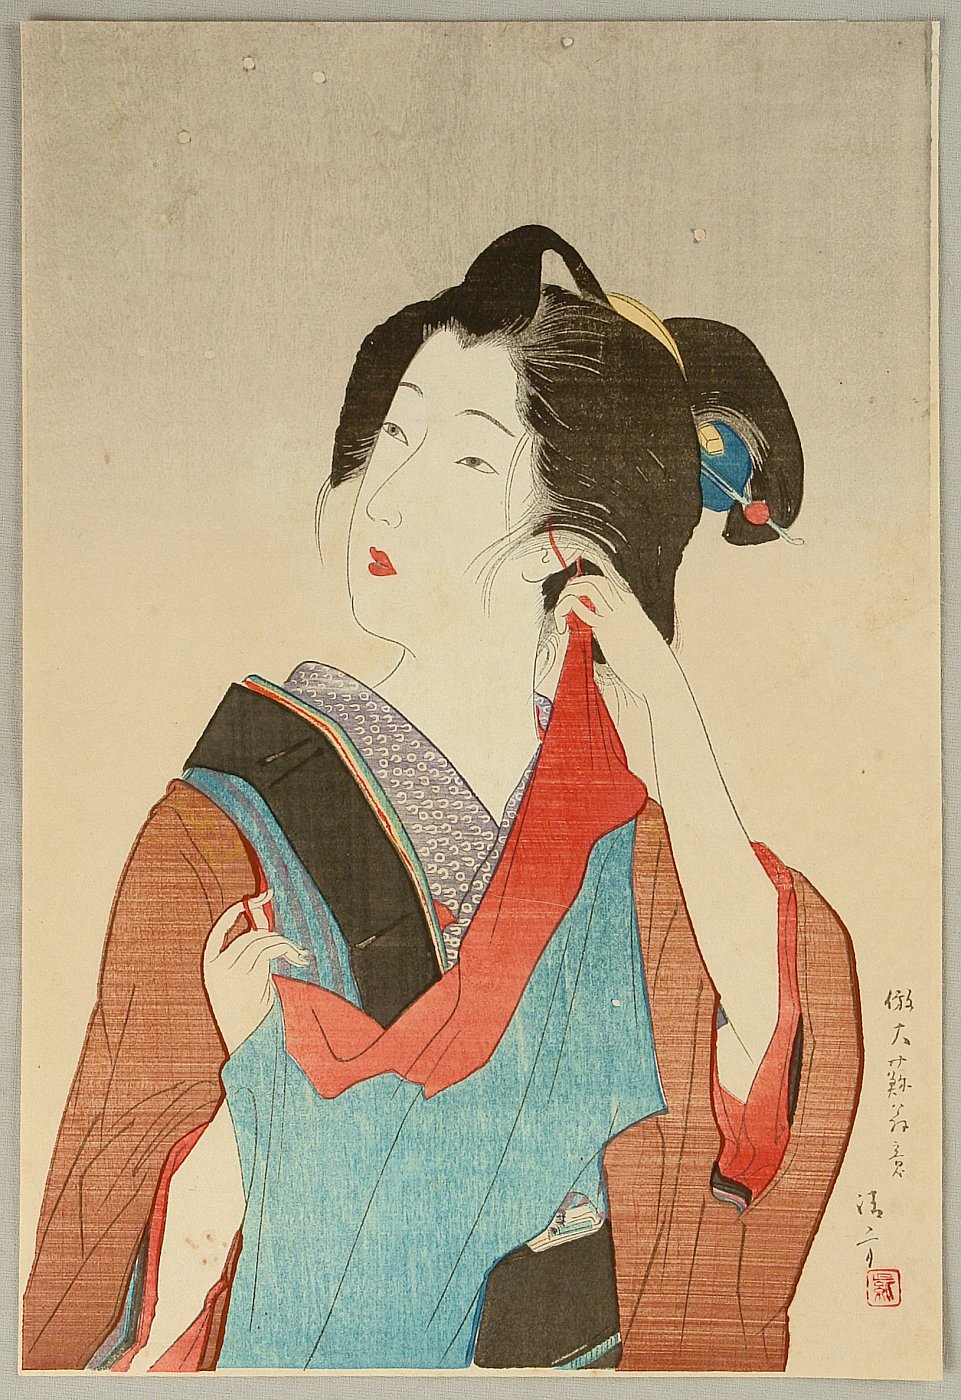 鏑木清方: Beauty from 1873 - 明治十五年代美人風景 薄雪